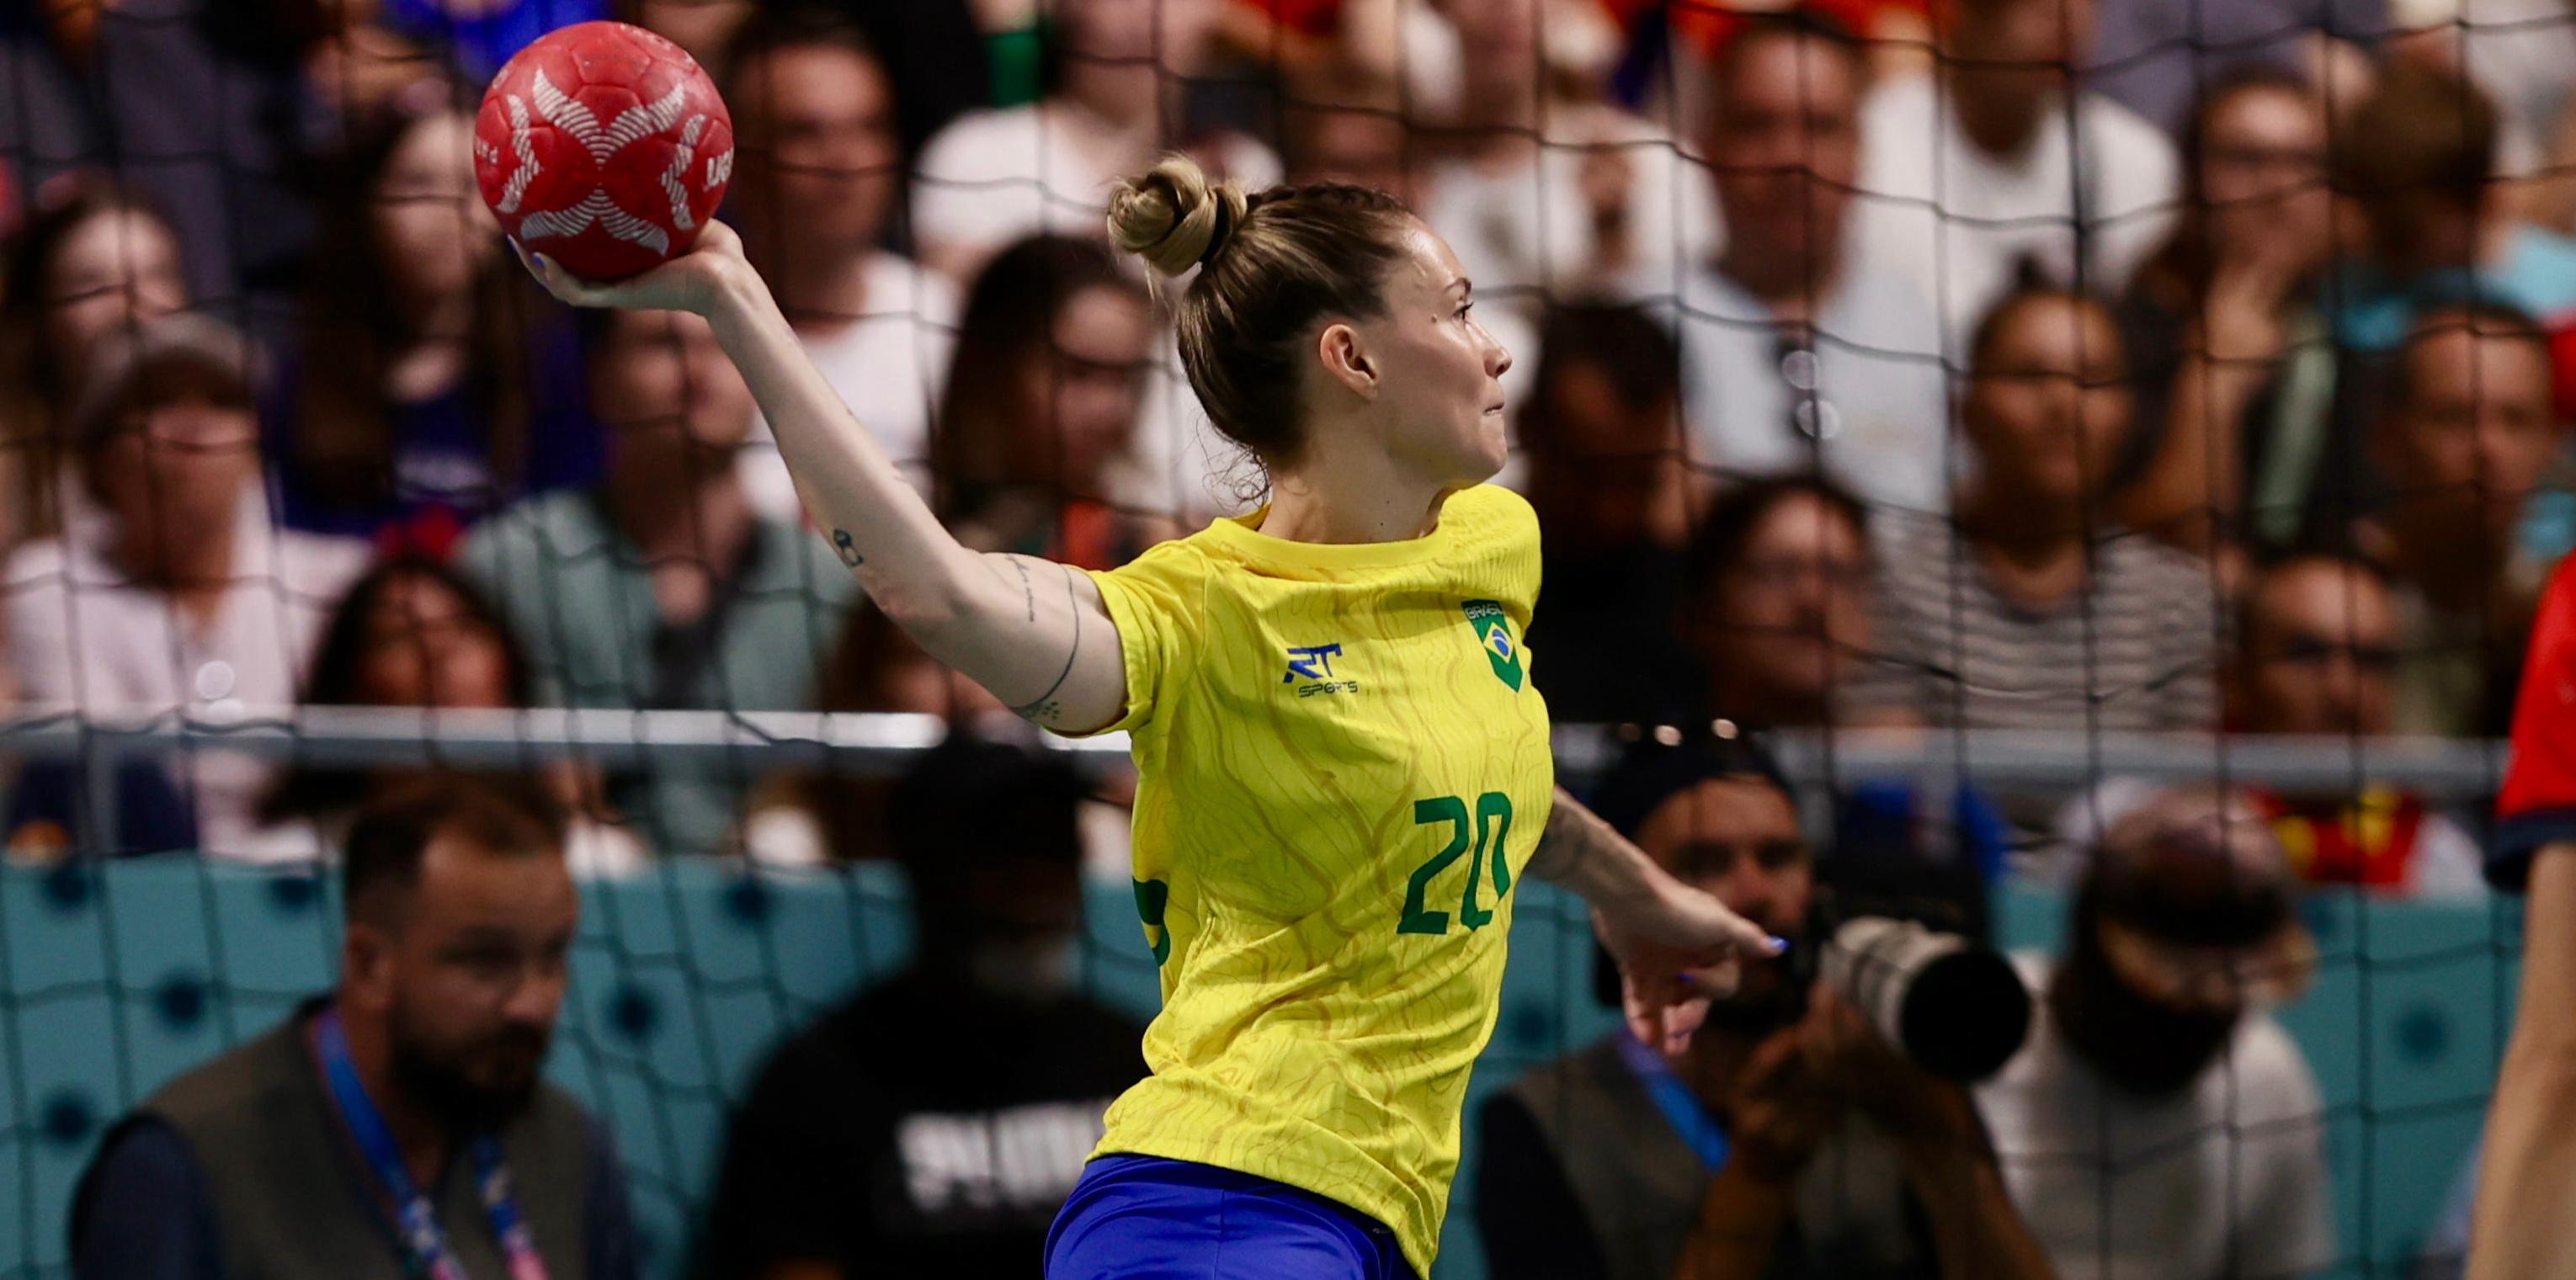 Brasil estreia com vitória sobre a Espanha e quebra tabu no handebol feminino